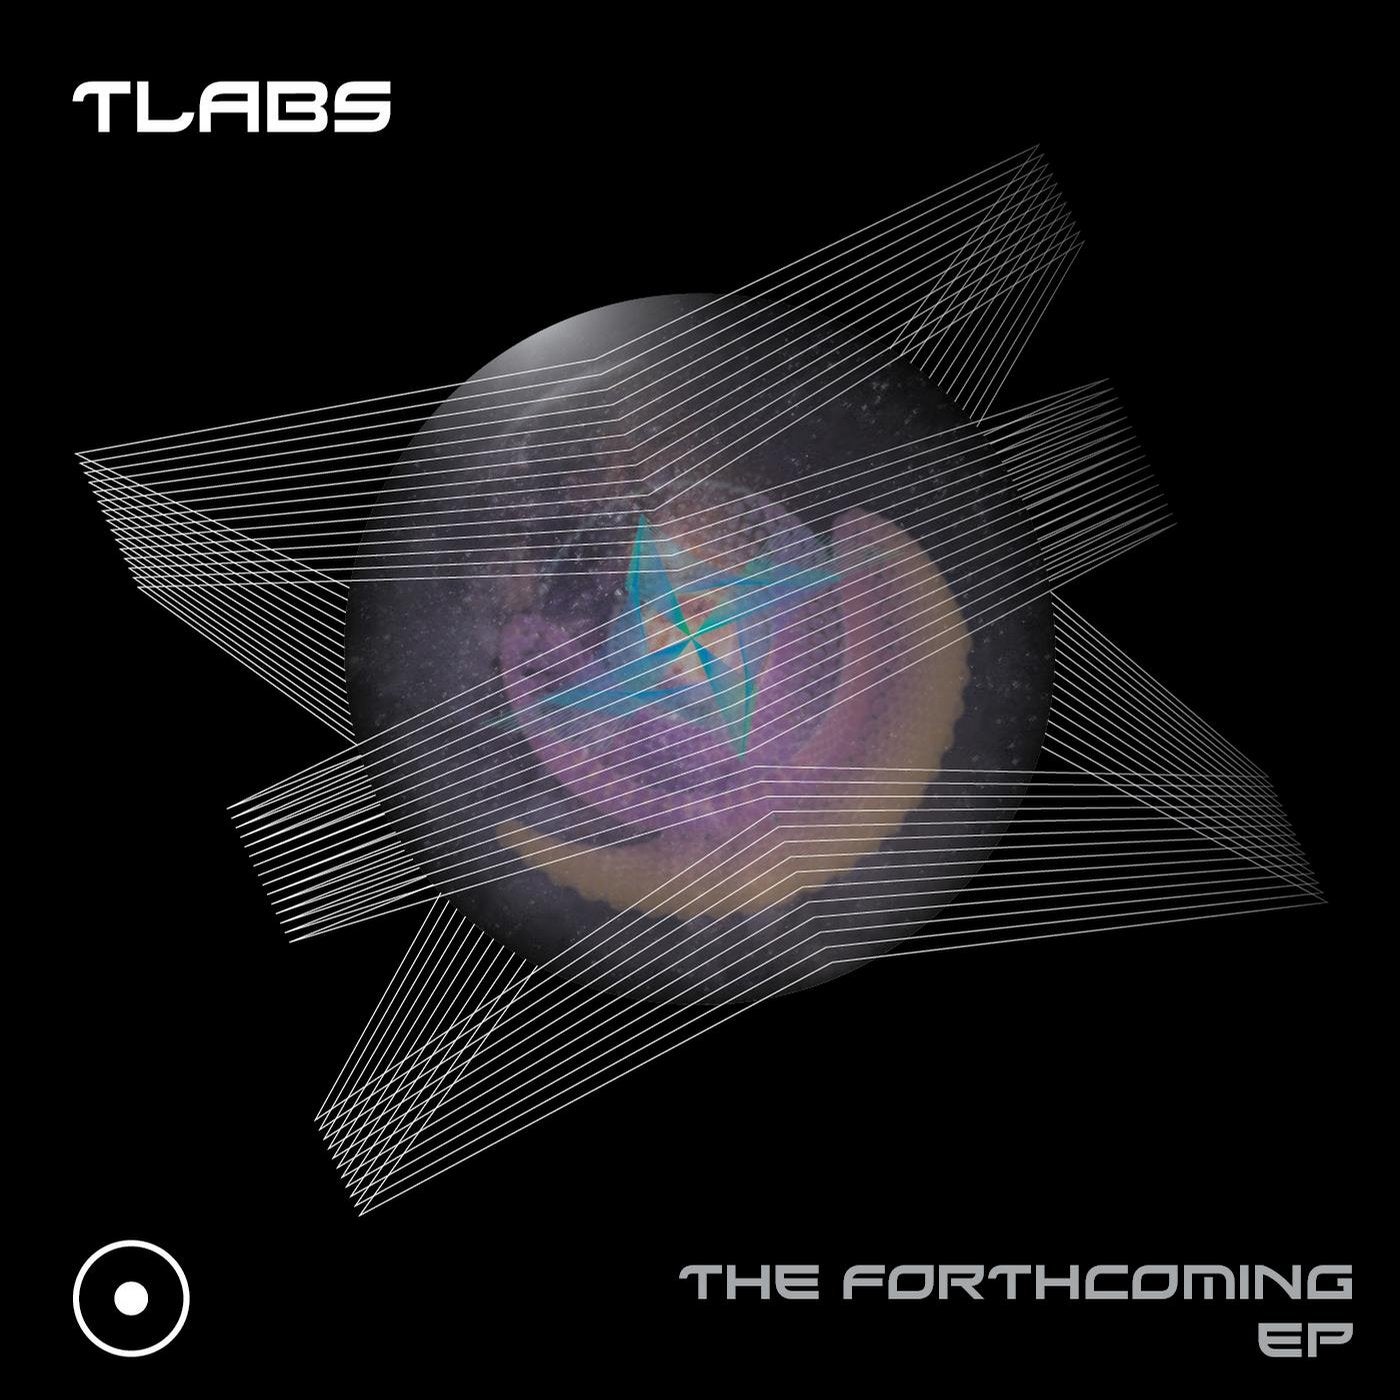 The Forthcoming EP